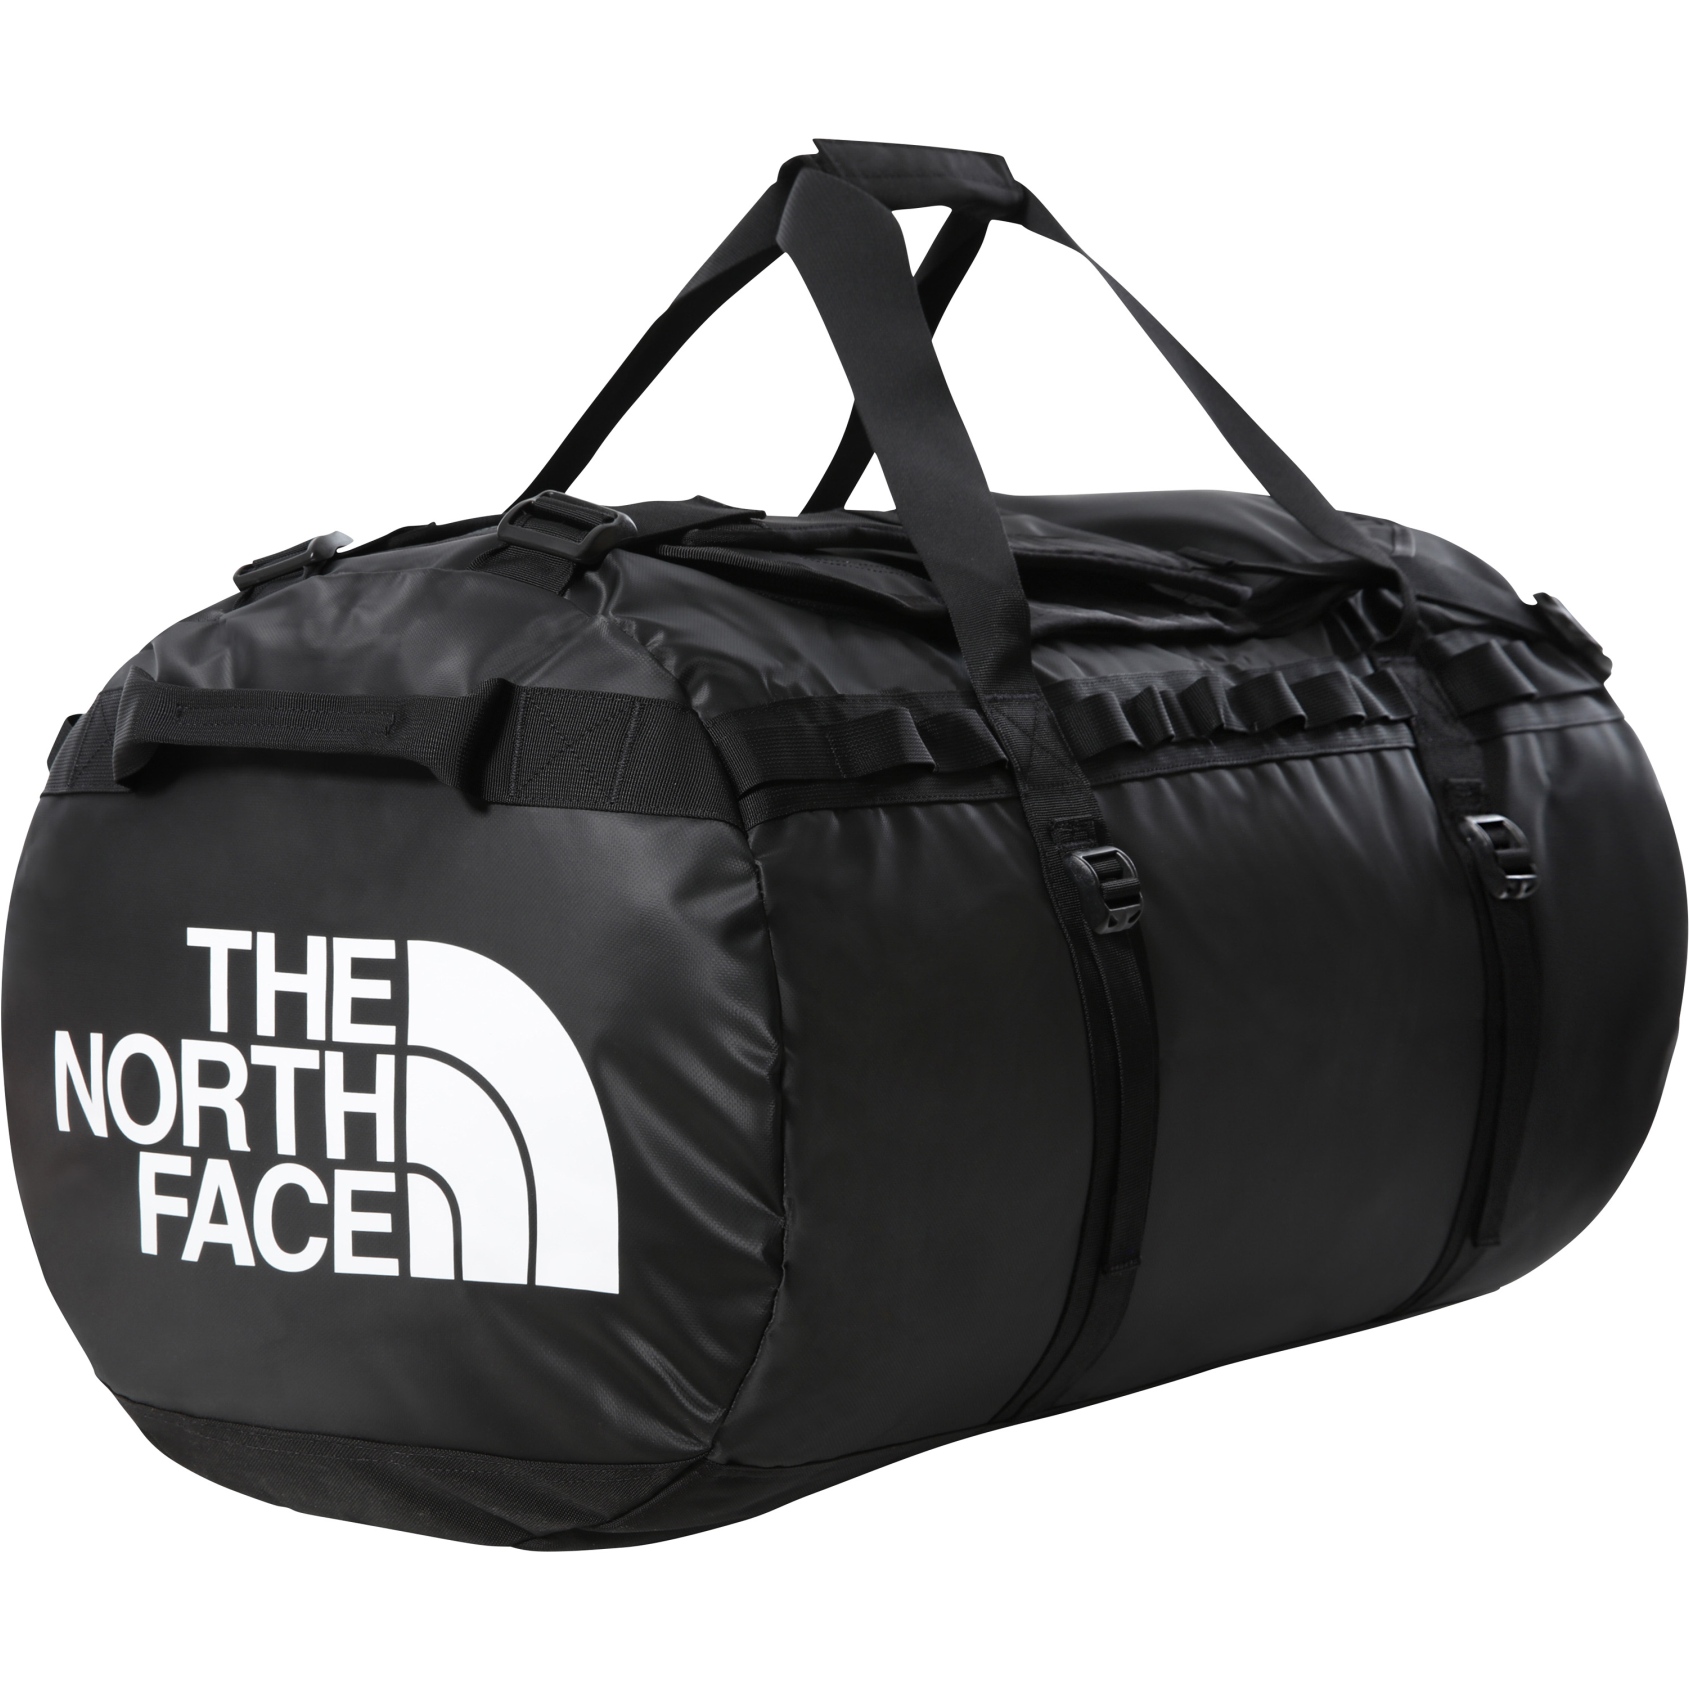 Produktbild von The North Face Base Camp Duffel Reisetasche - XL - TNF Black/TNF White